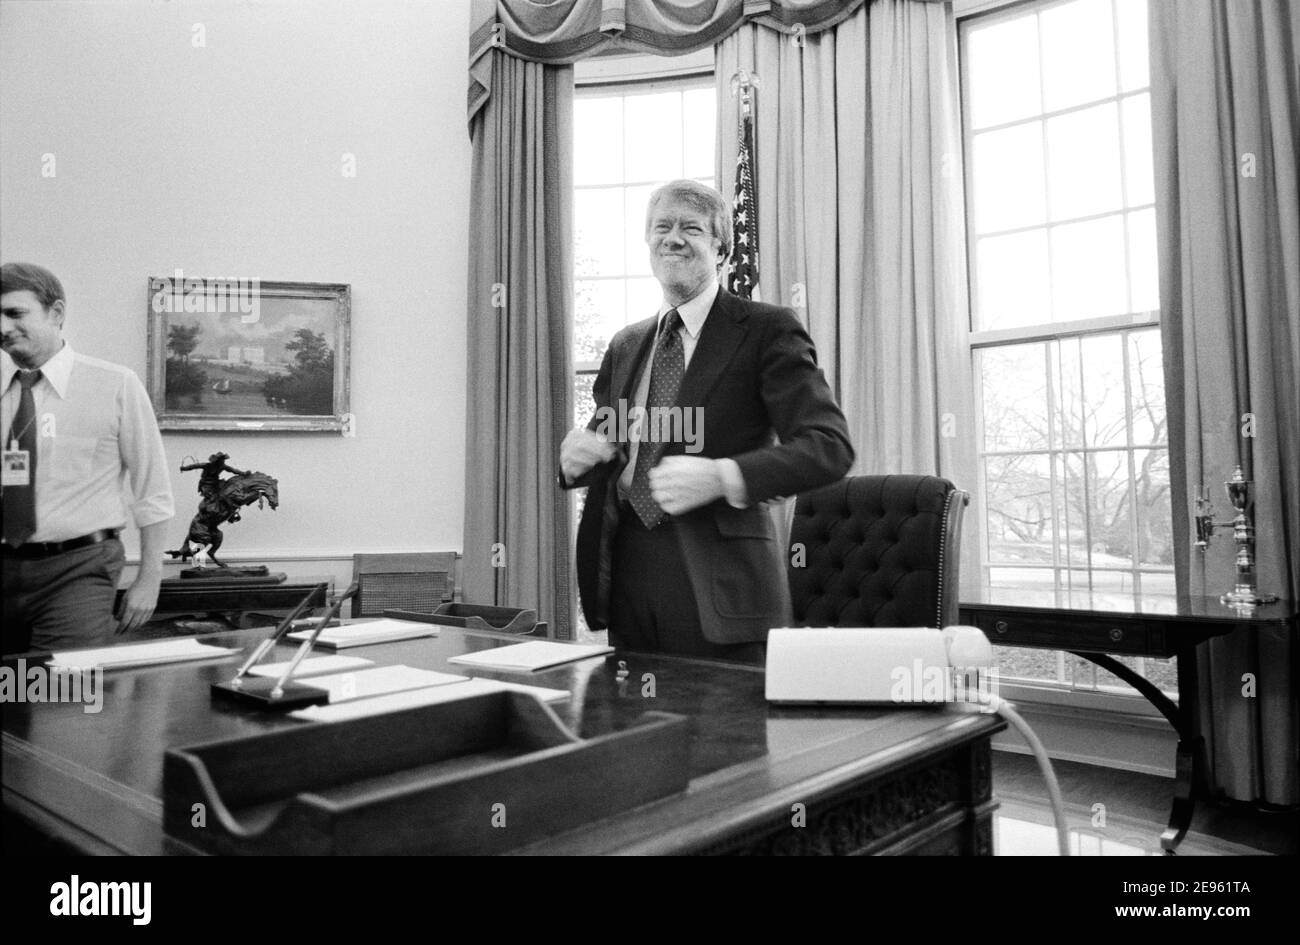 El presidente estadounidense Jimmy Carter está de pie detrás de su escritorio en la Oficina Oval de la Casa Blanca, Washington, D.C., EE.UU., Marion S. Trikosko, 2 de febrero de 1977 Foto de stock